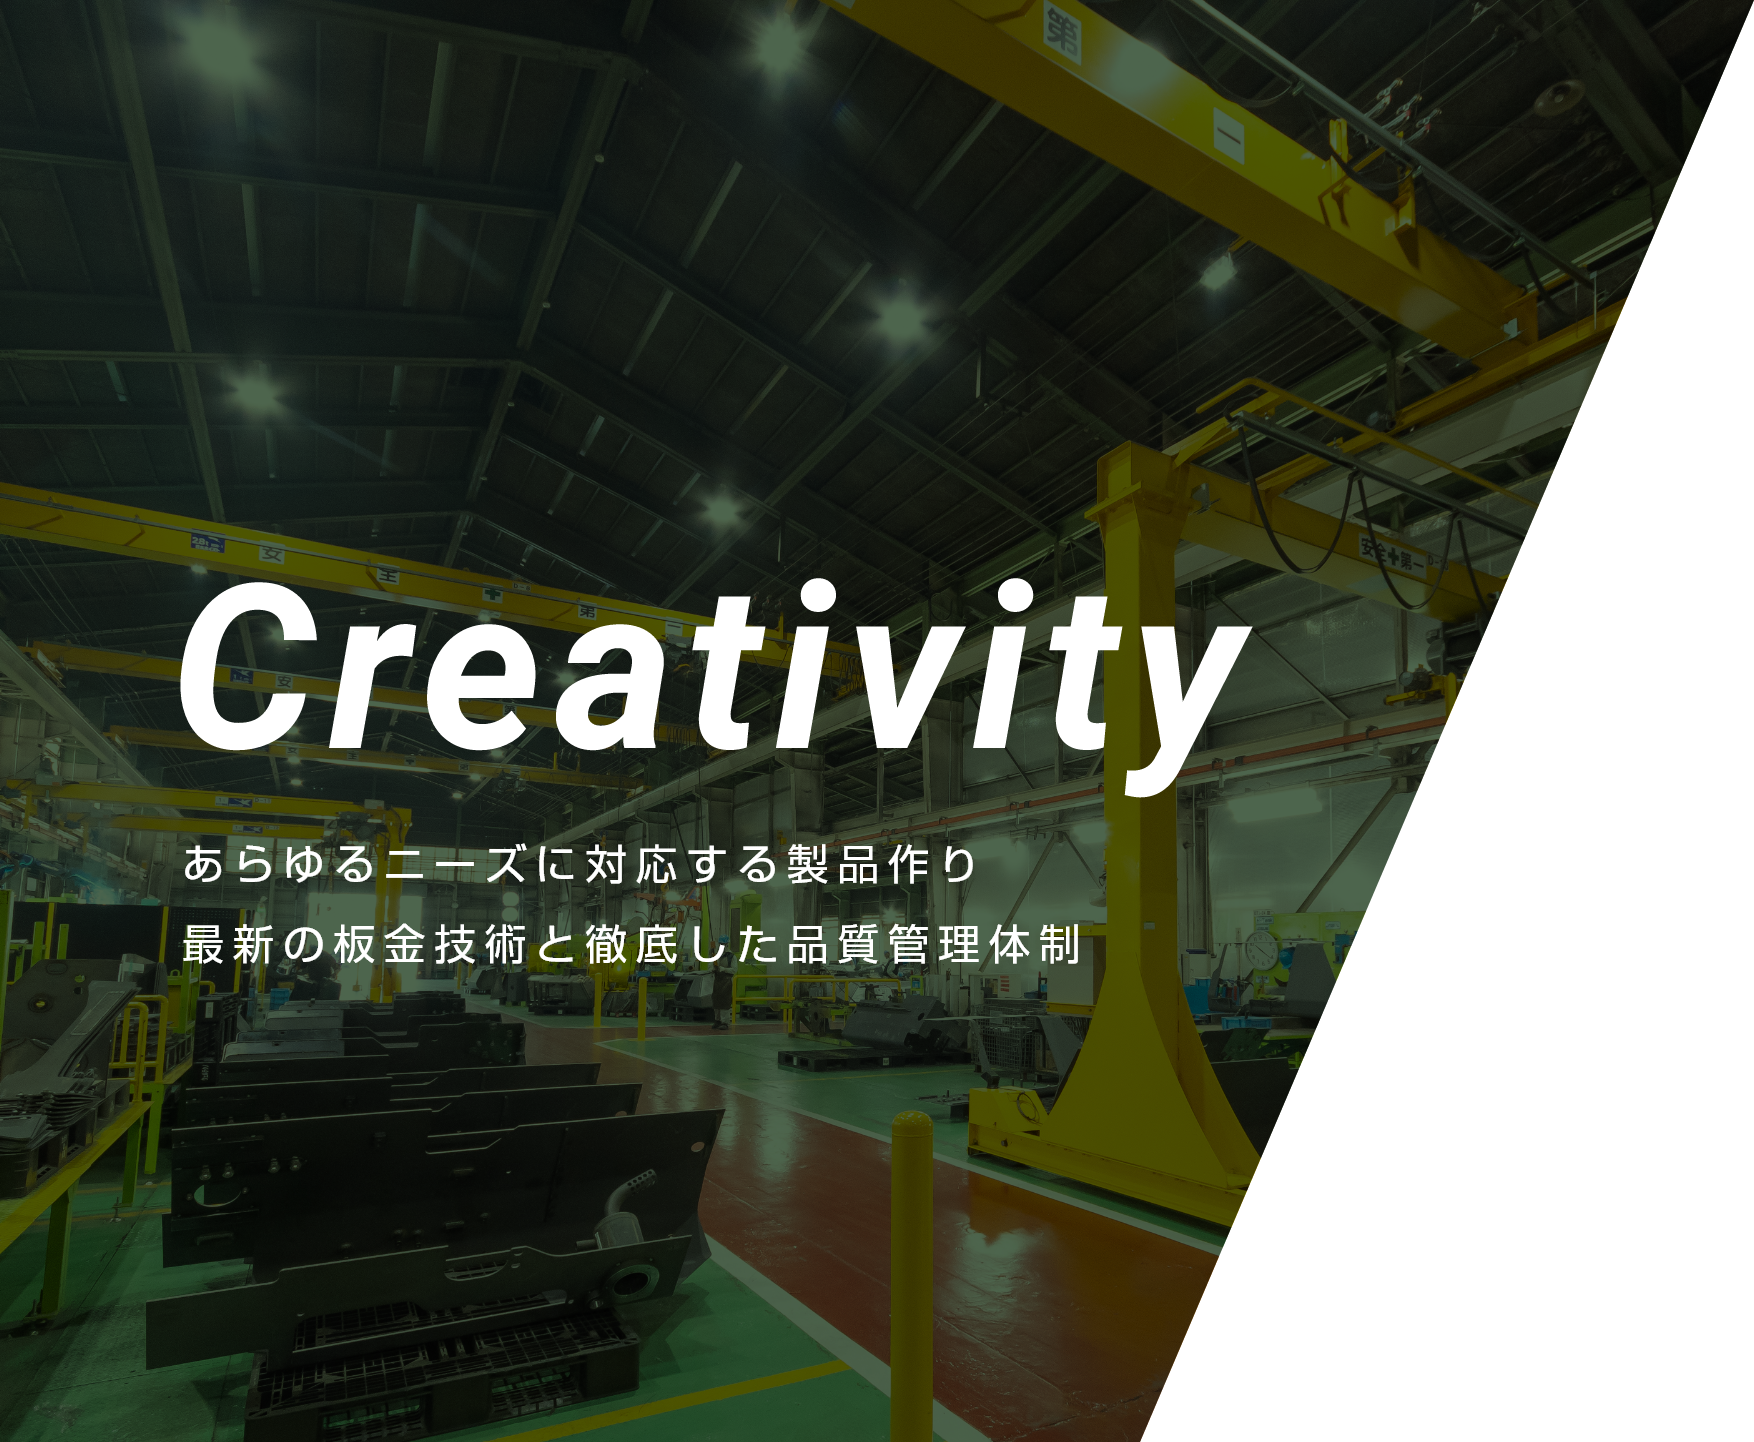 Creativity あらゆるニーズに対する製品作り 最新の板金技術と徹底した品質管理体制